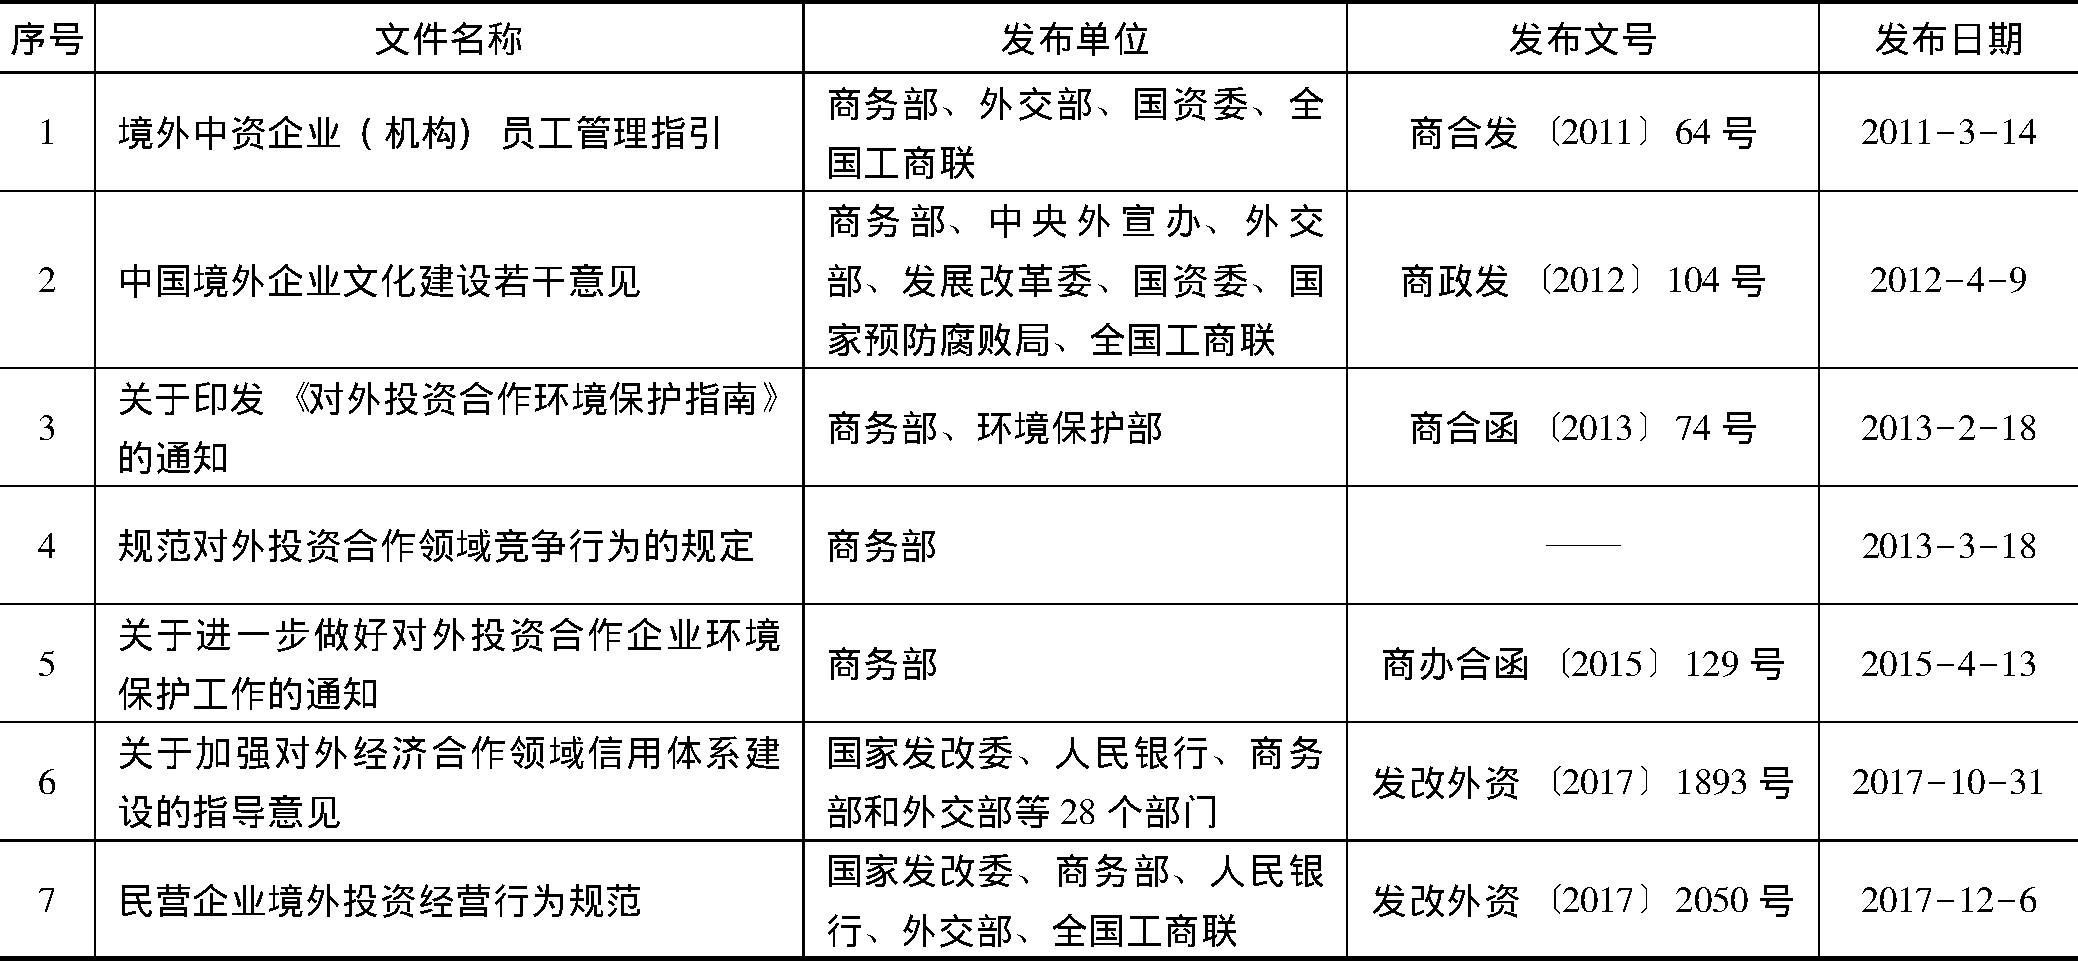 表4 中国对外直接投资其他规范化管理政策一览